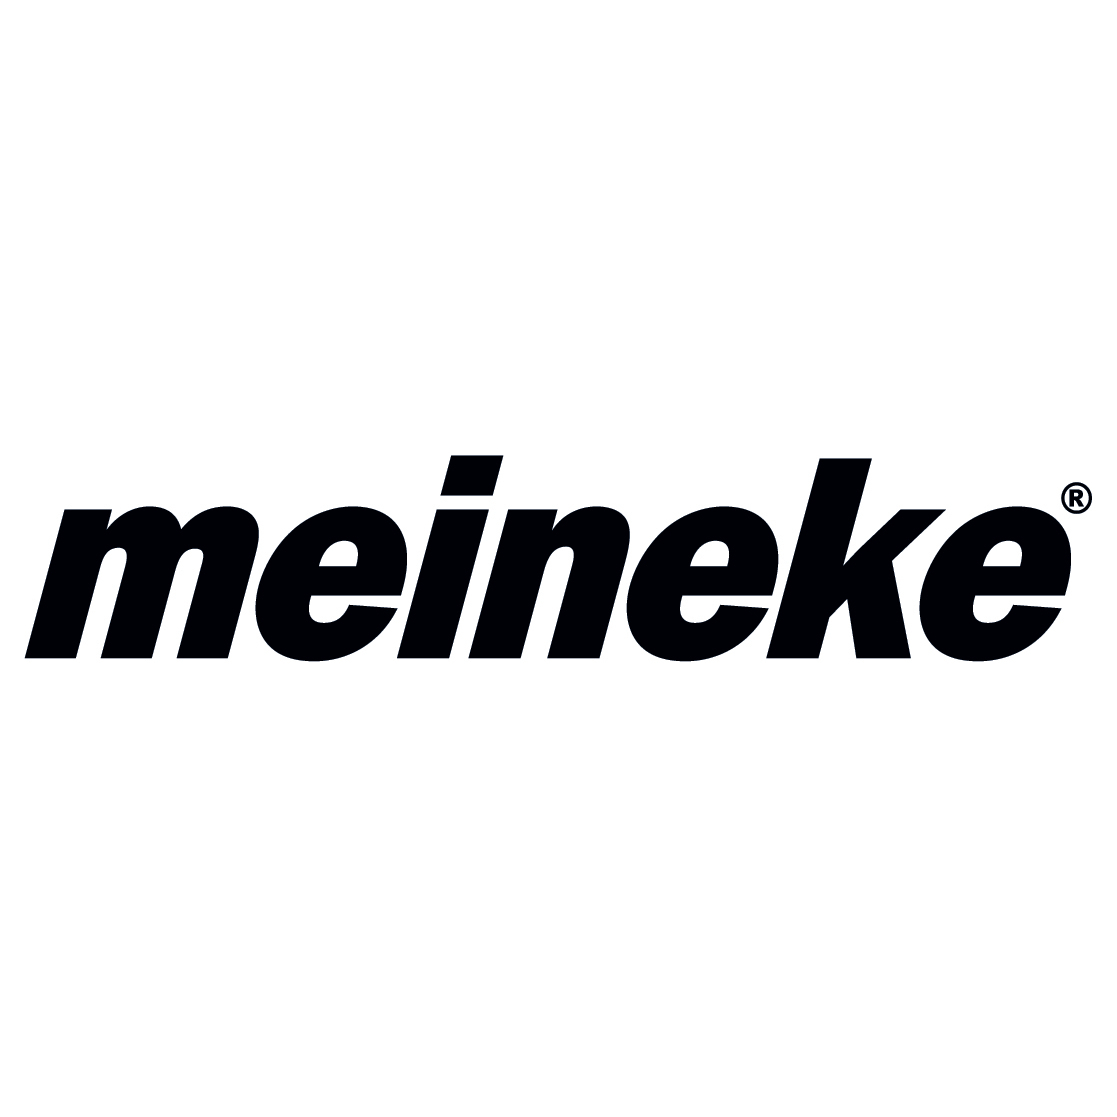 Meineke Car Care Center | Financial Advisor in Mount Kisco,New York